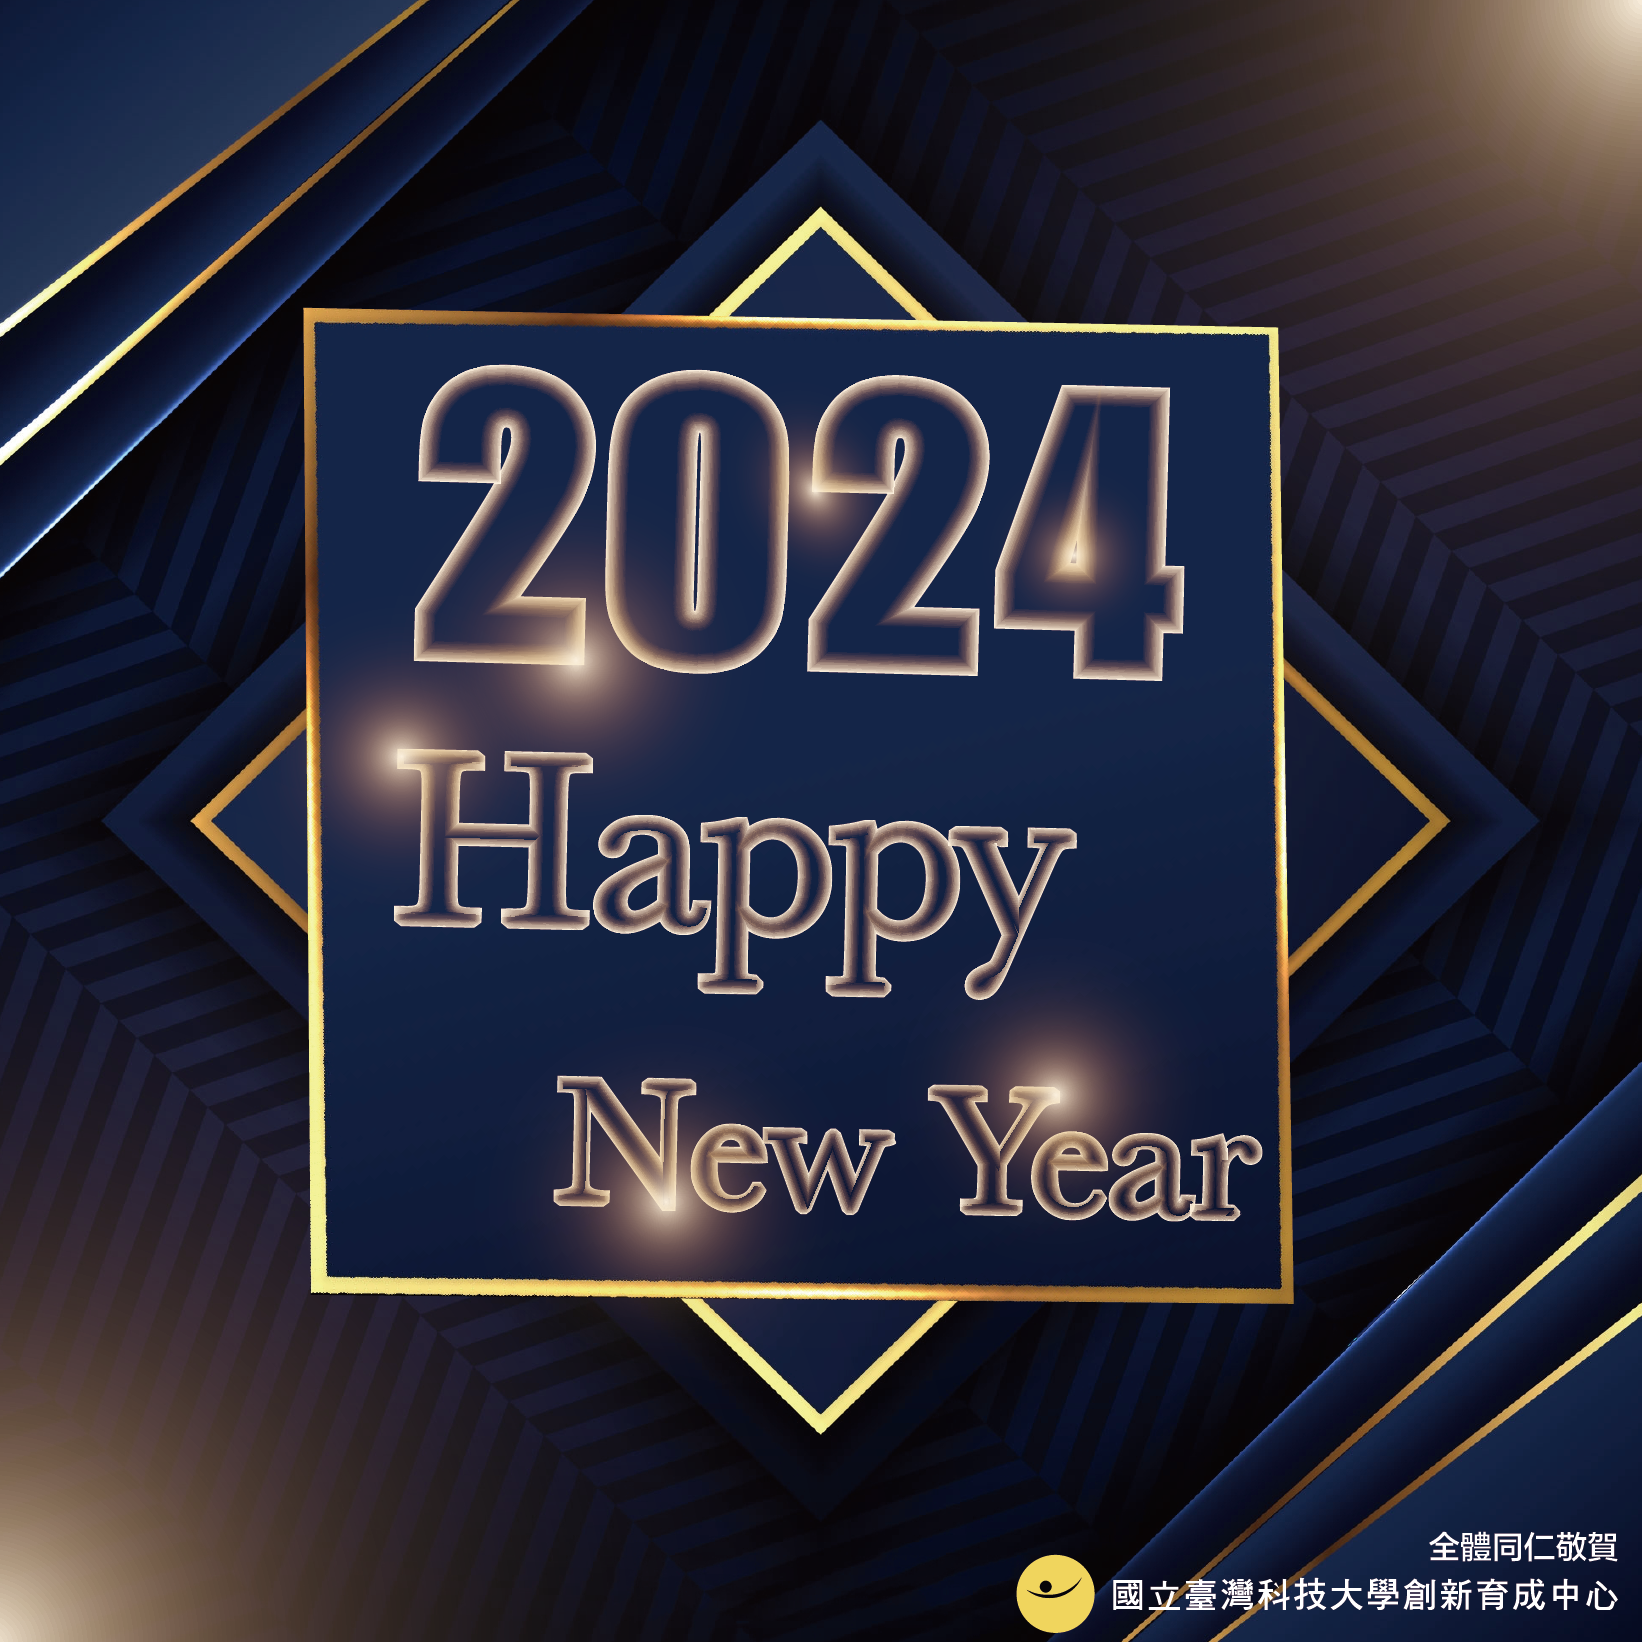 國立臺灣科技大學創新育成中心2024新年快樂 1